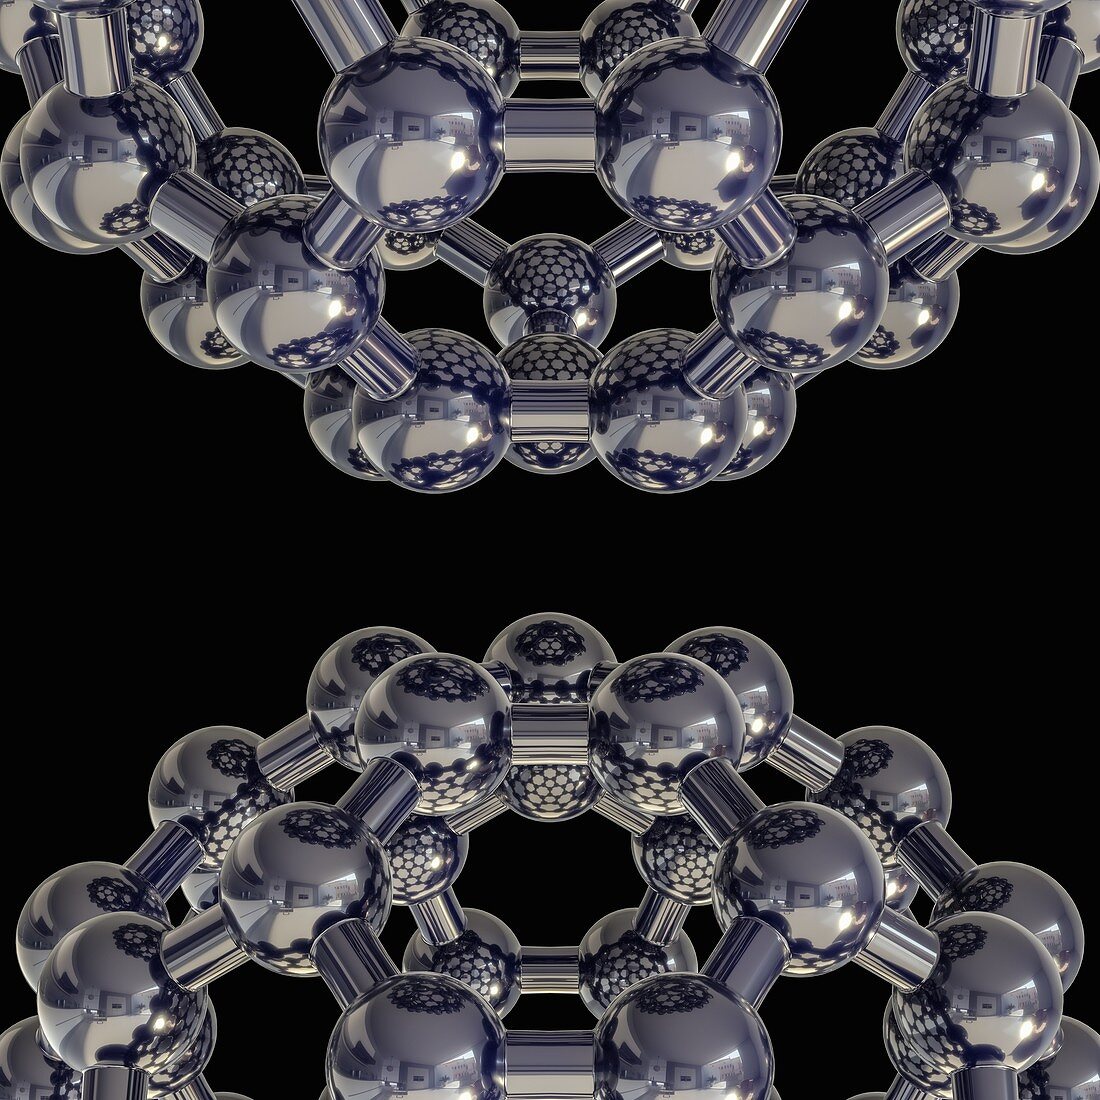 Buckyball C60 molecules, illustration